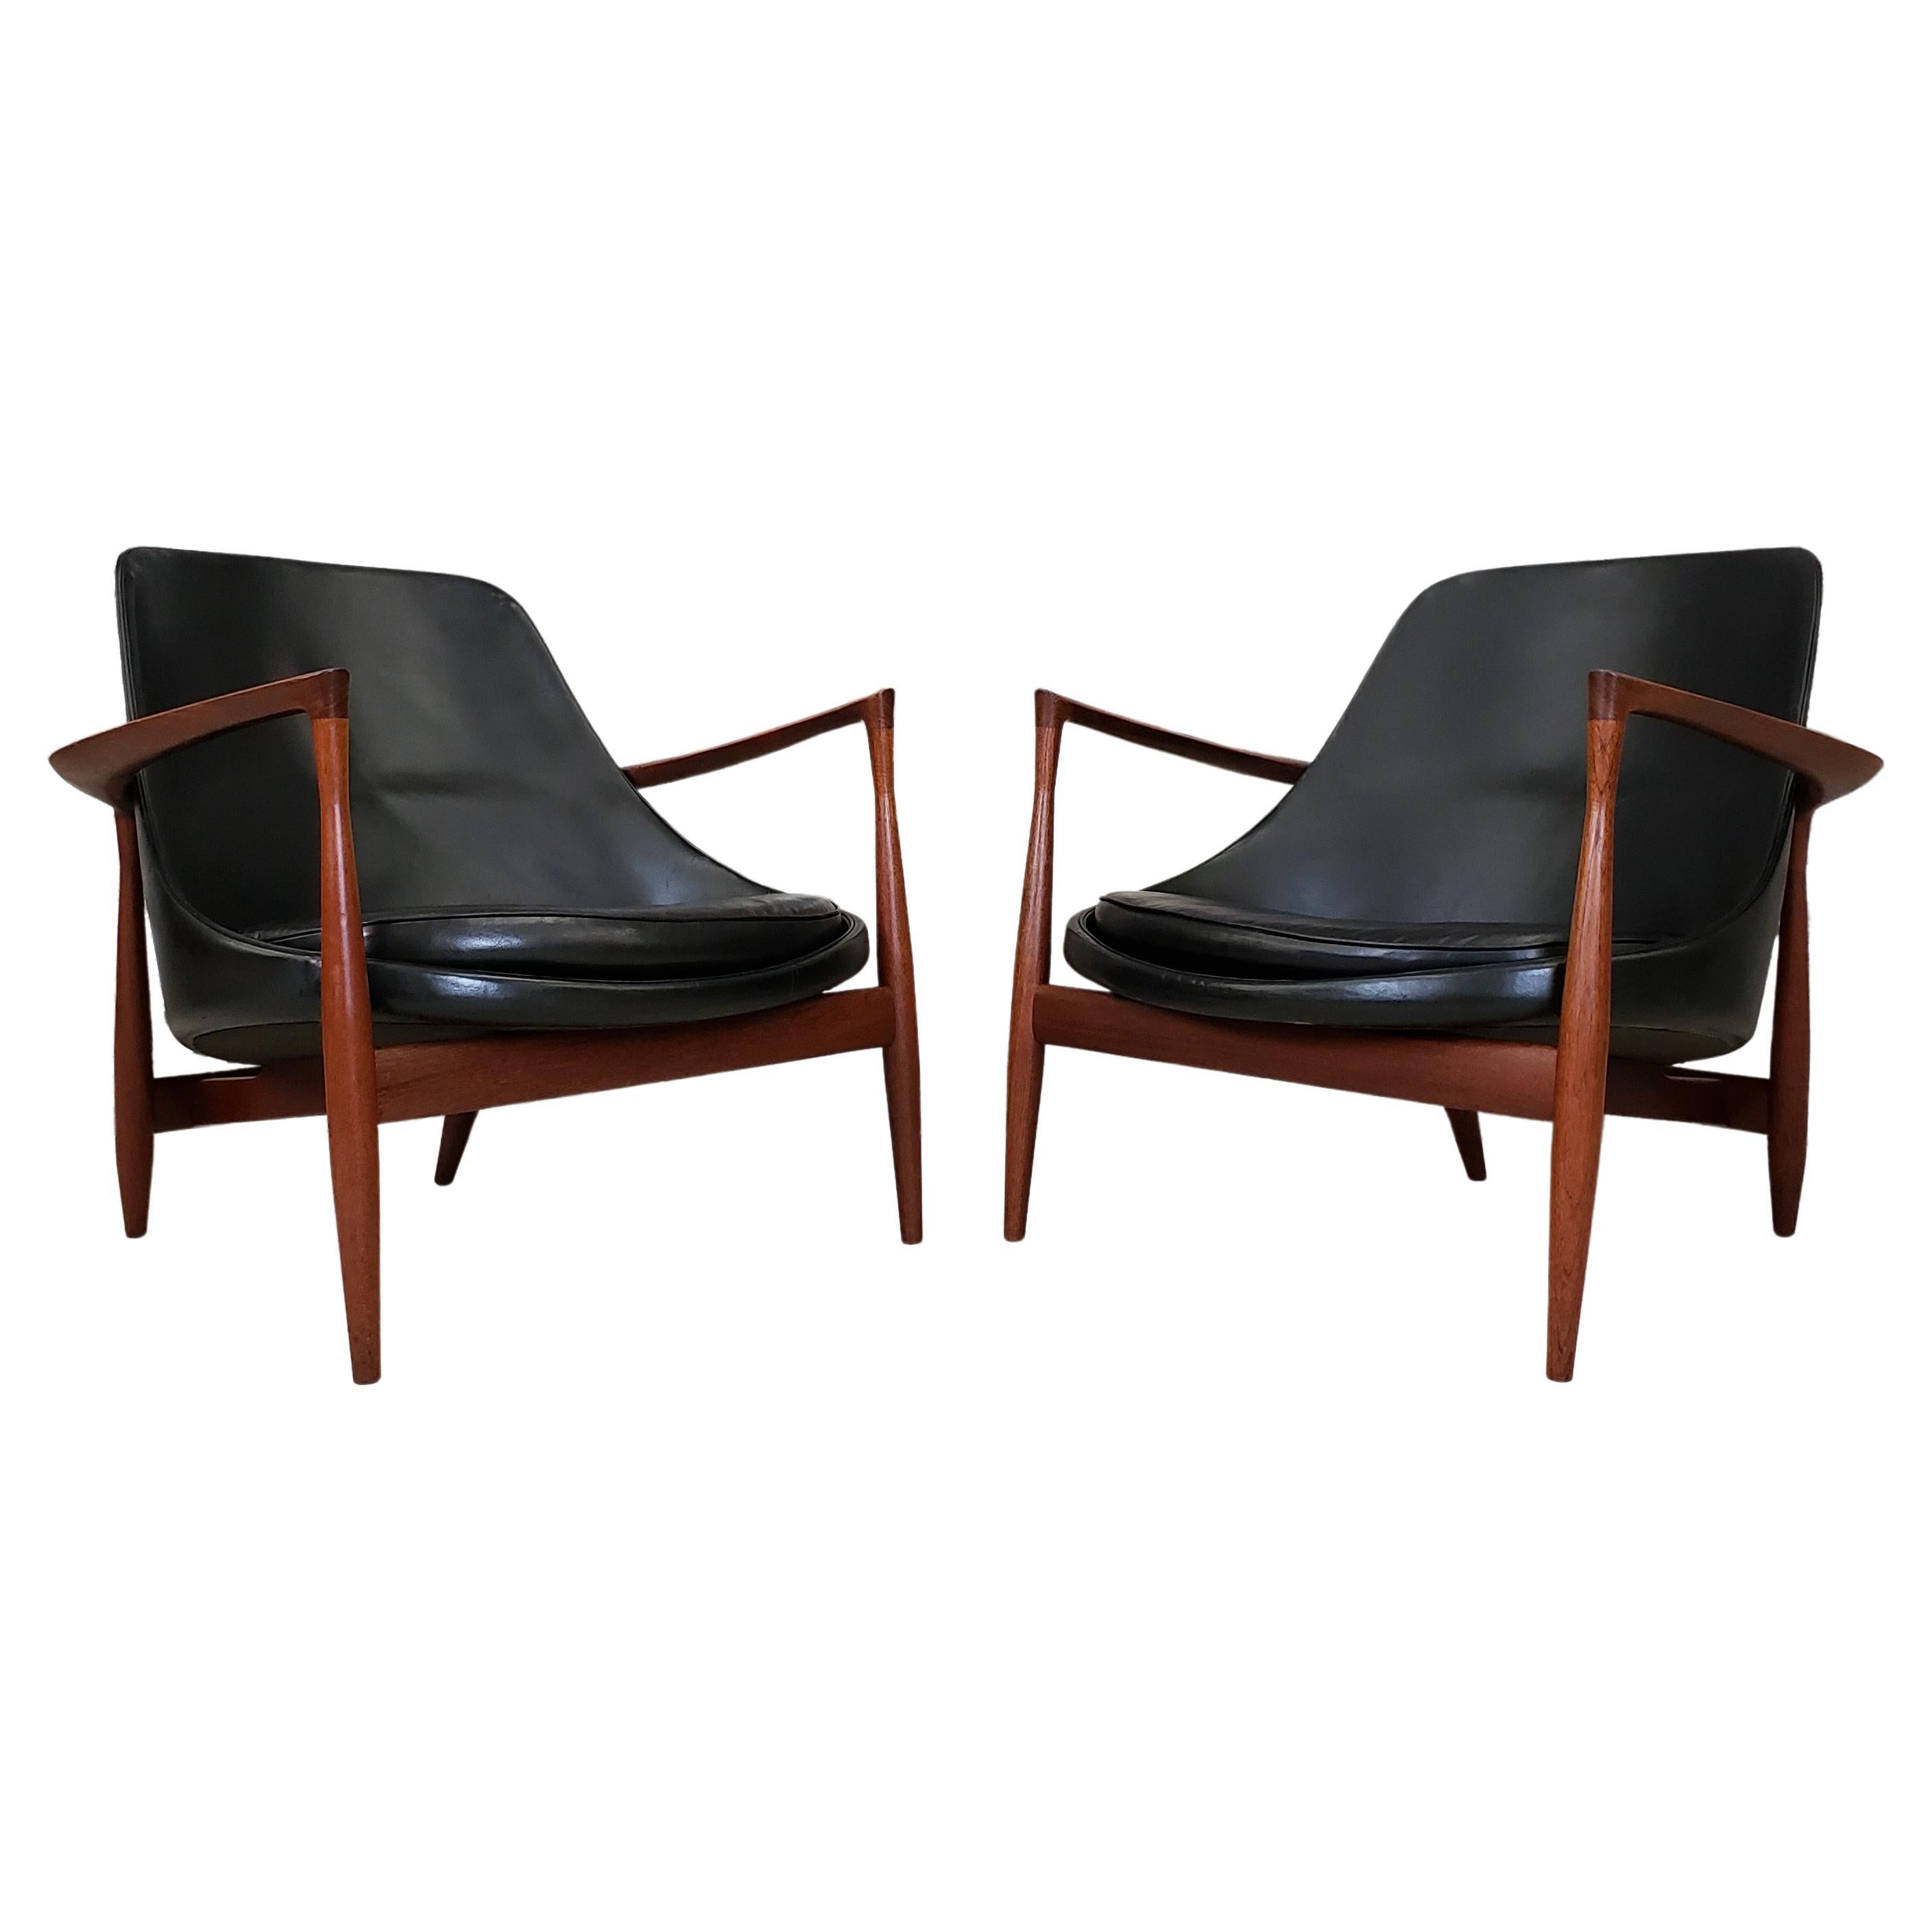 Pair of Elizabeth Chairs by Ib Kofod-Larsen Model U-56